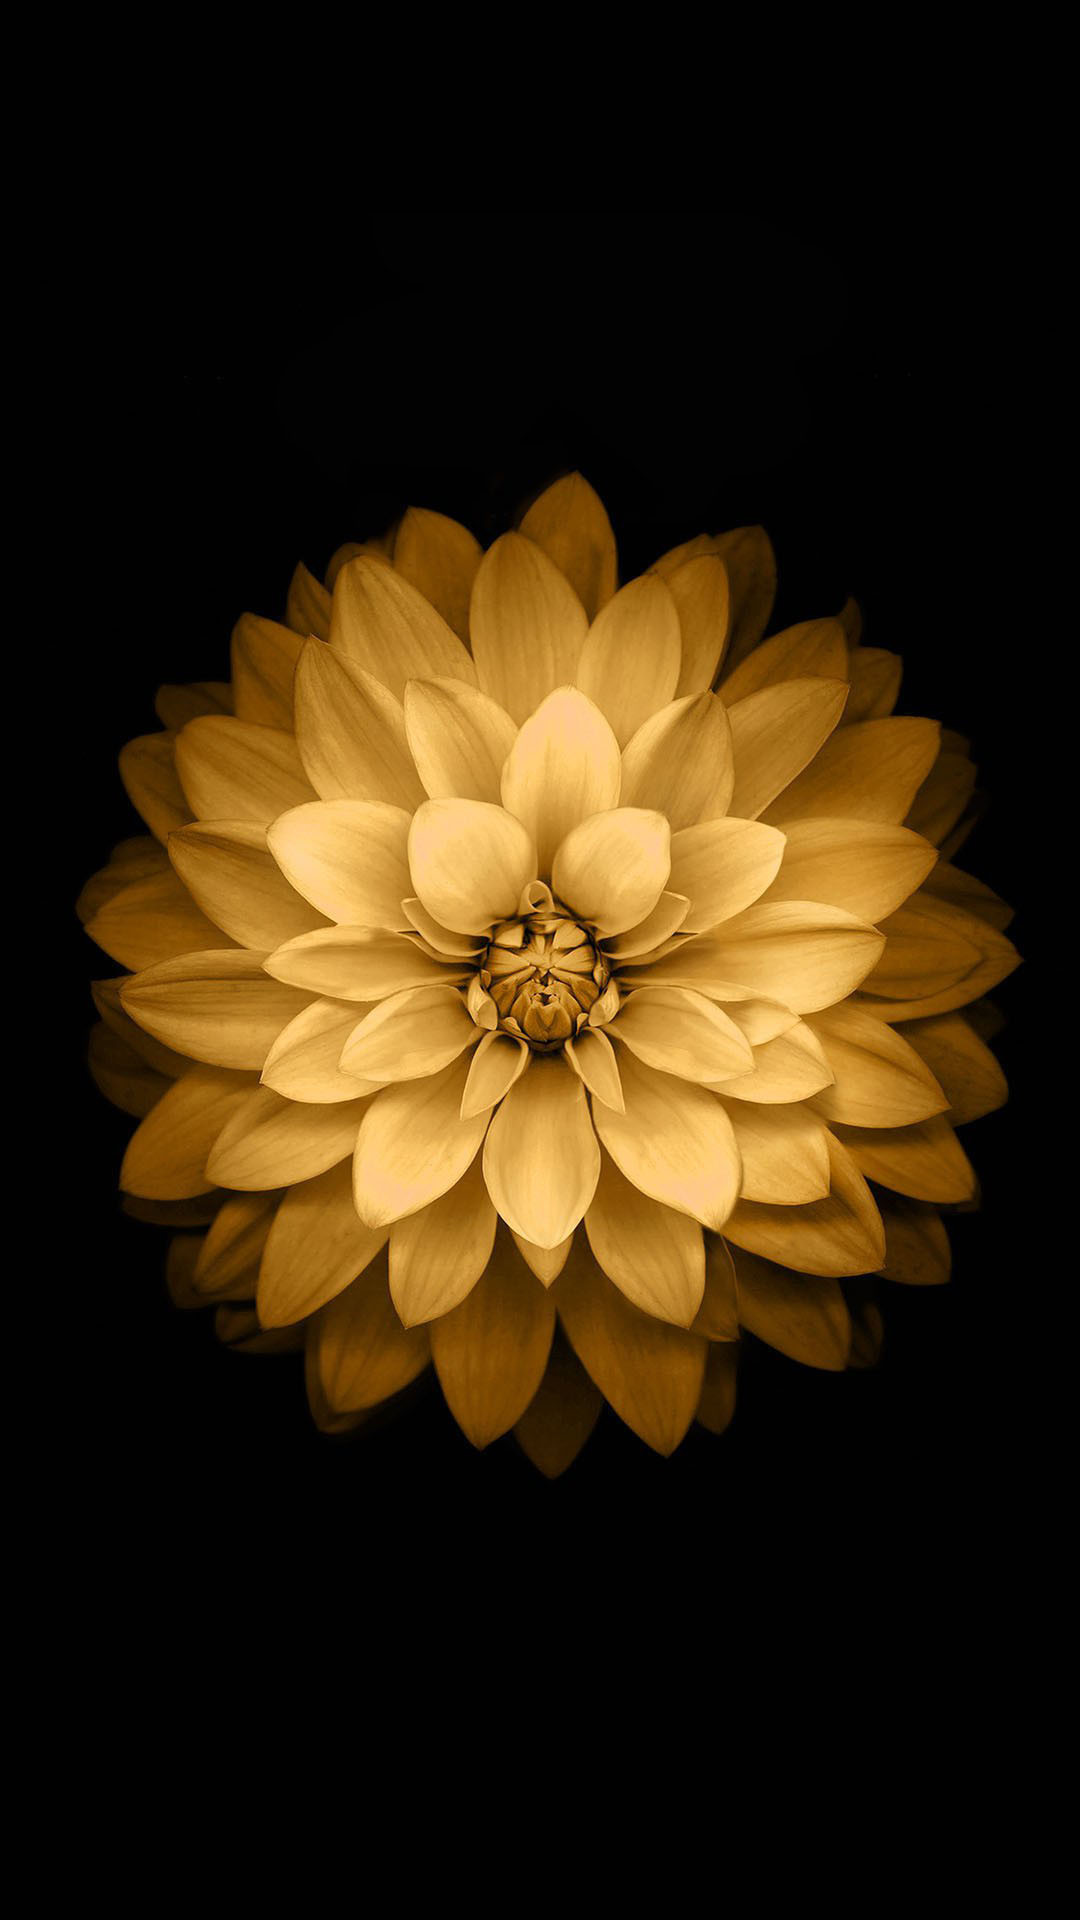 1080x1920 Download Golden Lotus Flower iOS Wallpaper